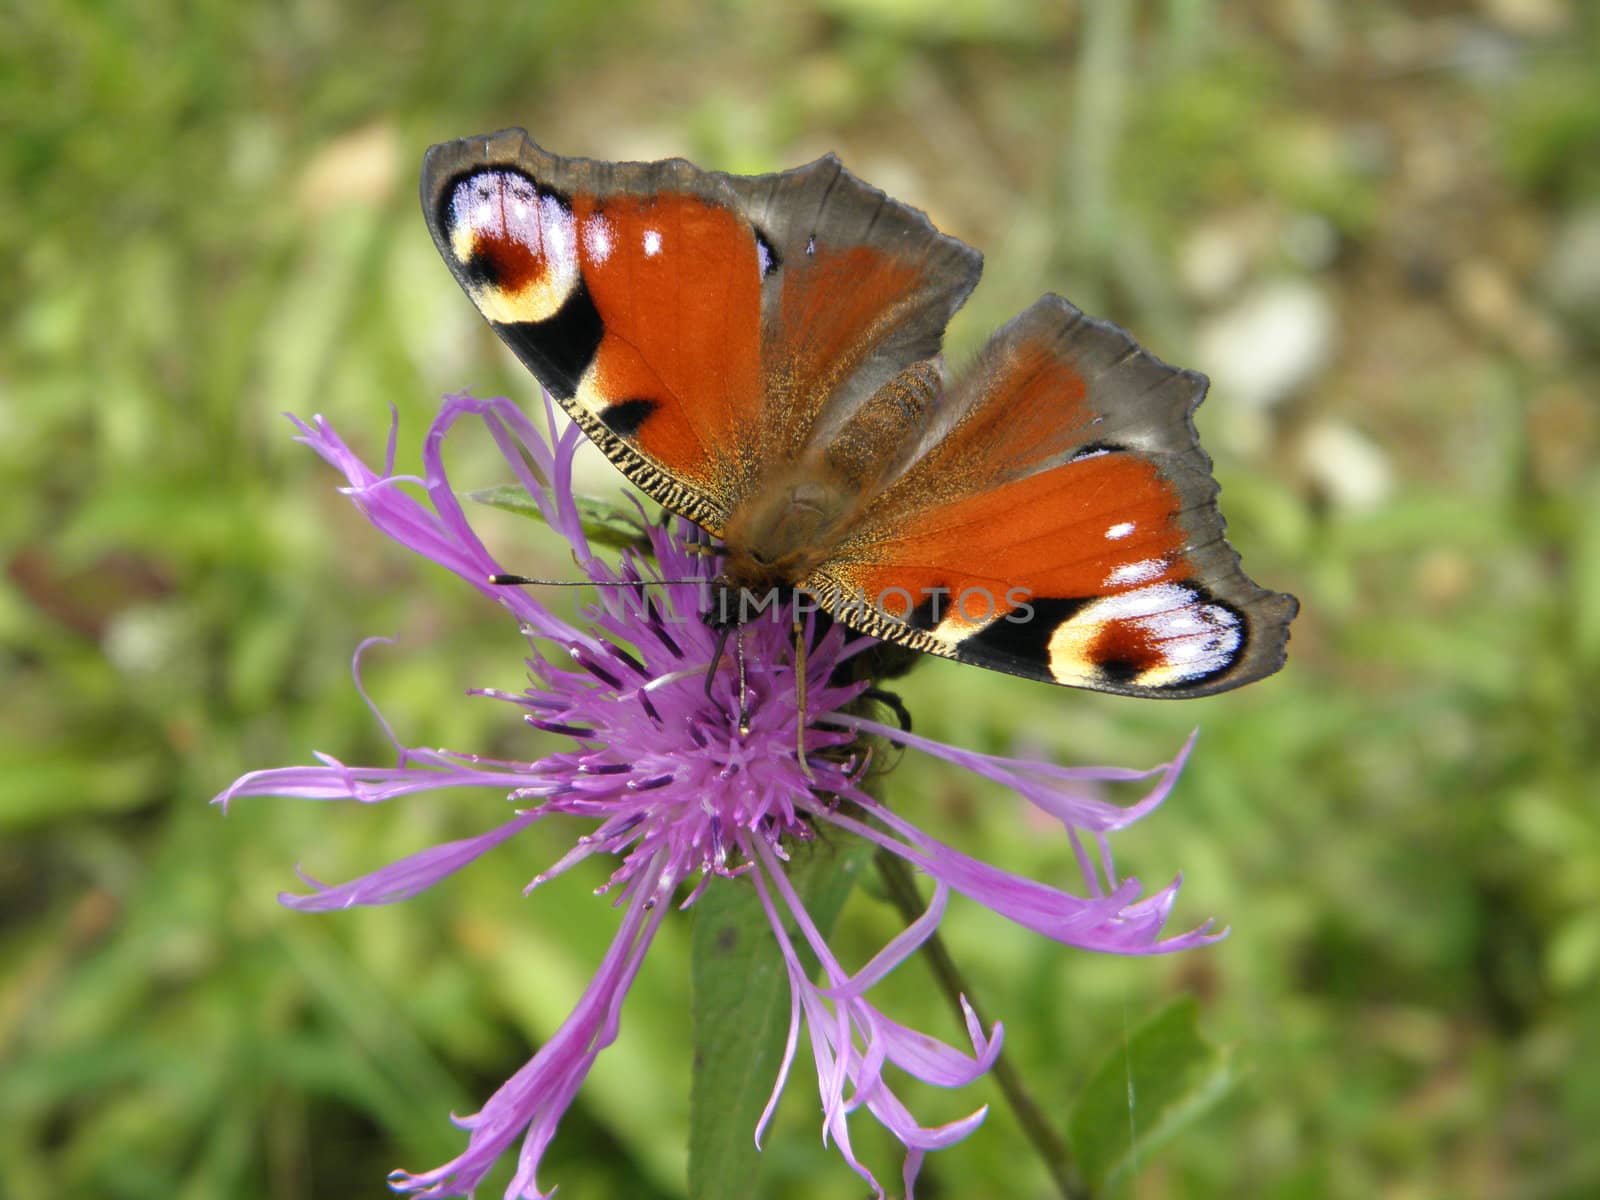 beautiful butterfly on a flower